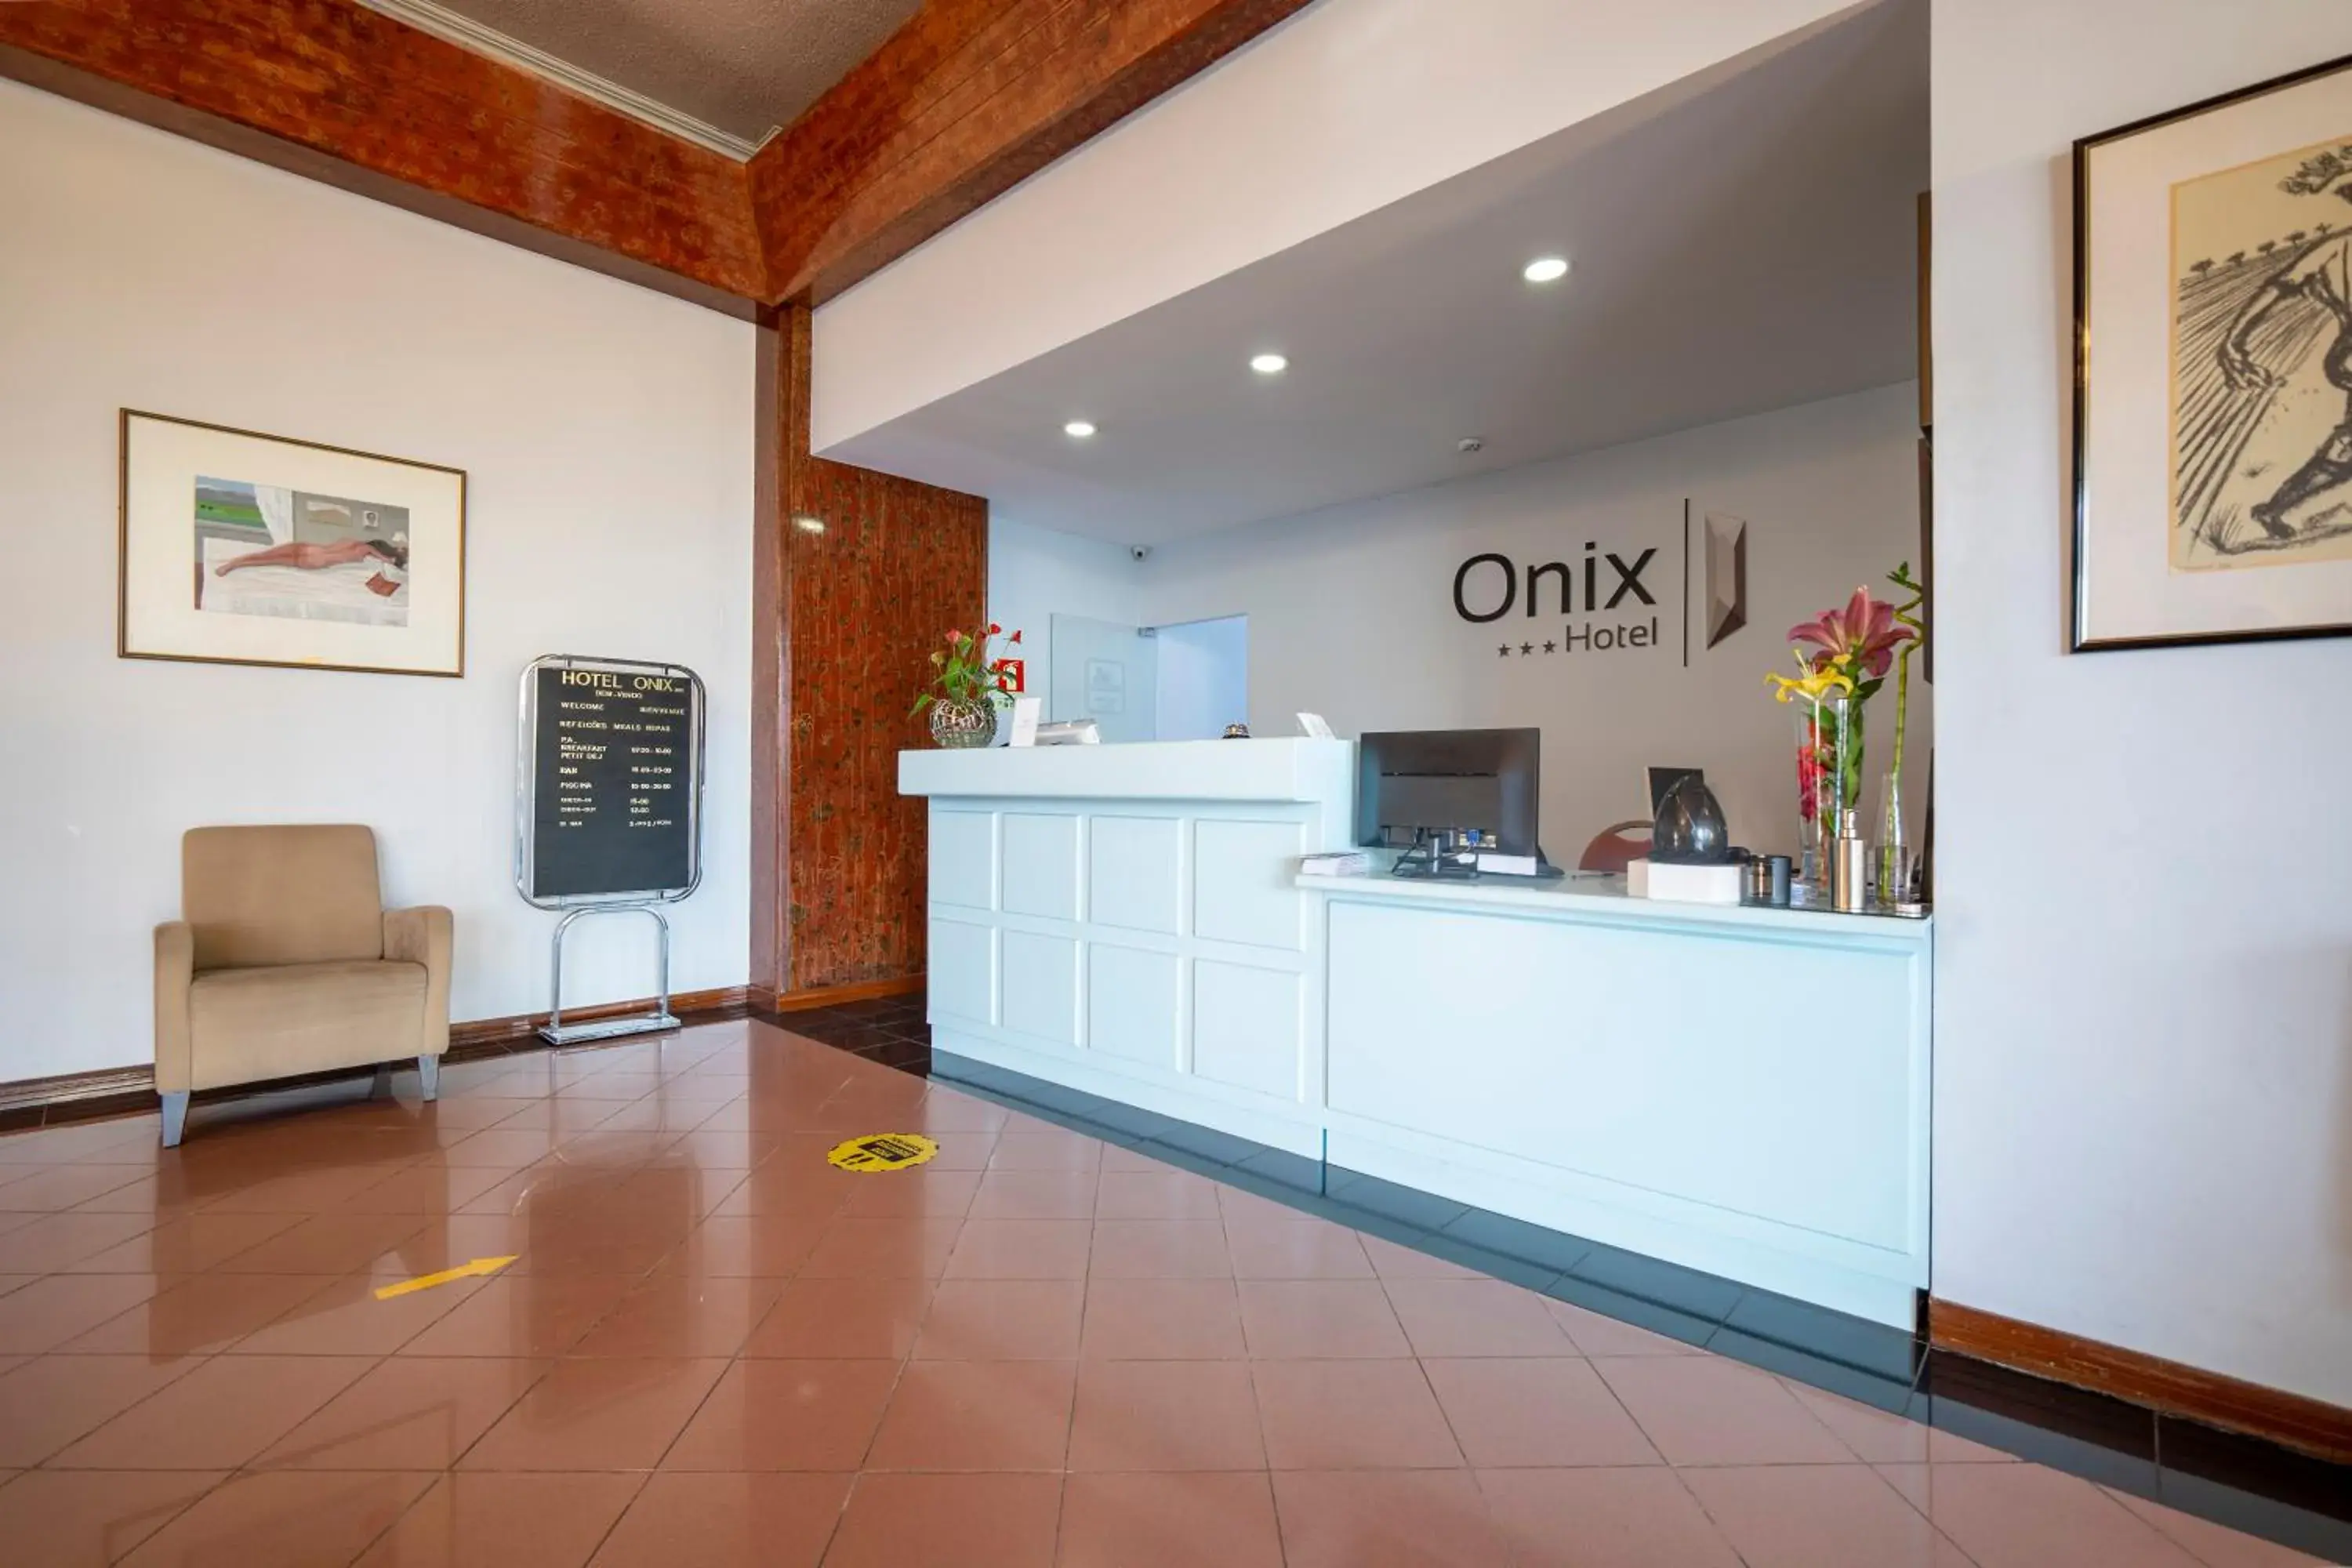 Lobby or reception, Lobby/Reception in Hotel Onix